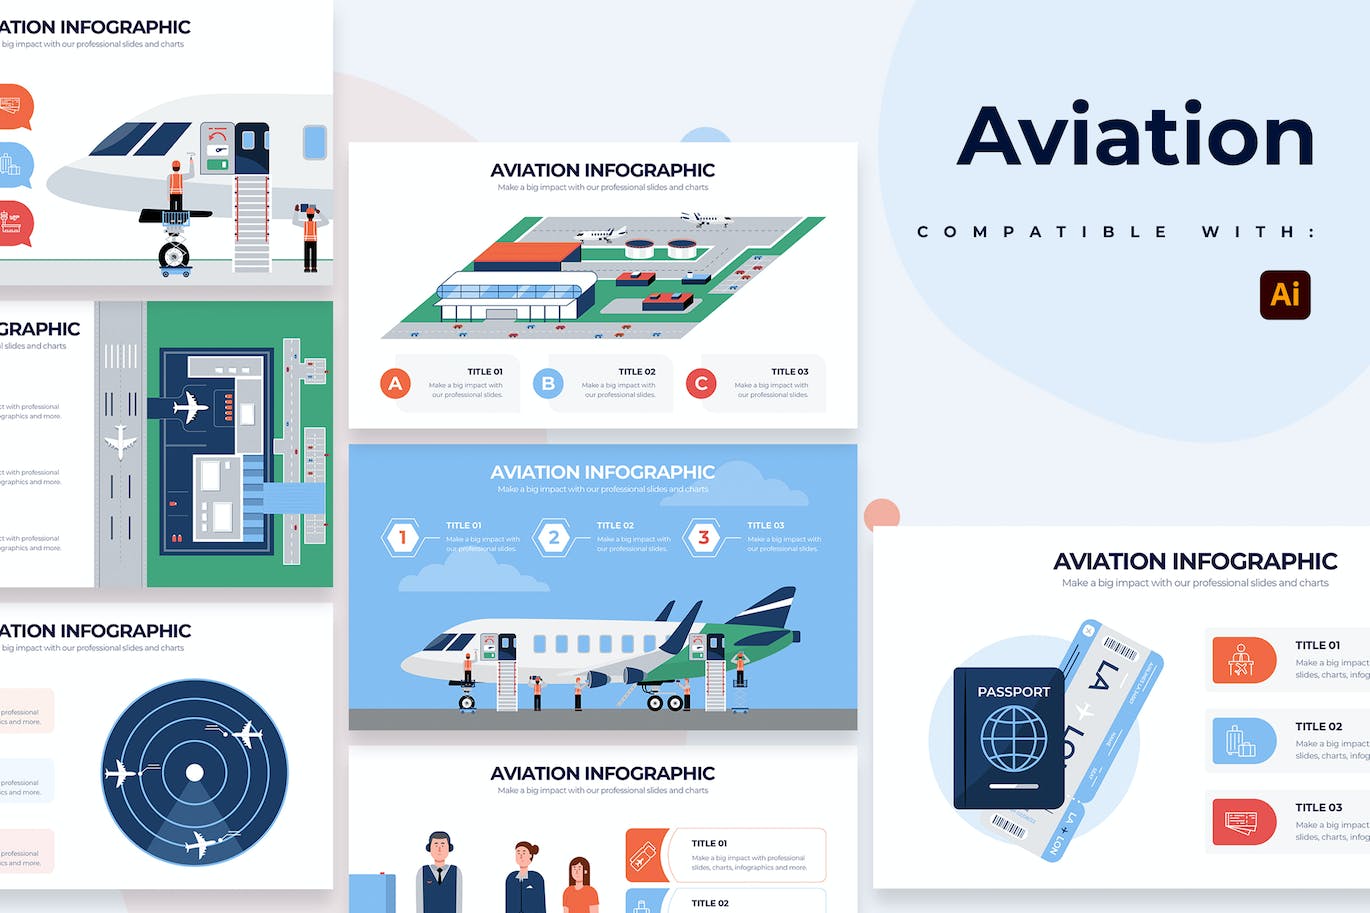 机场航空信息图表矢量模板 Education Aviation Illustrator Infographics 幻灯图表 第1张